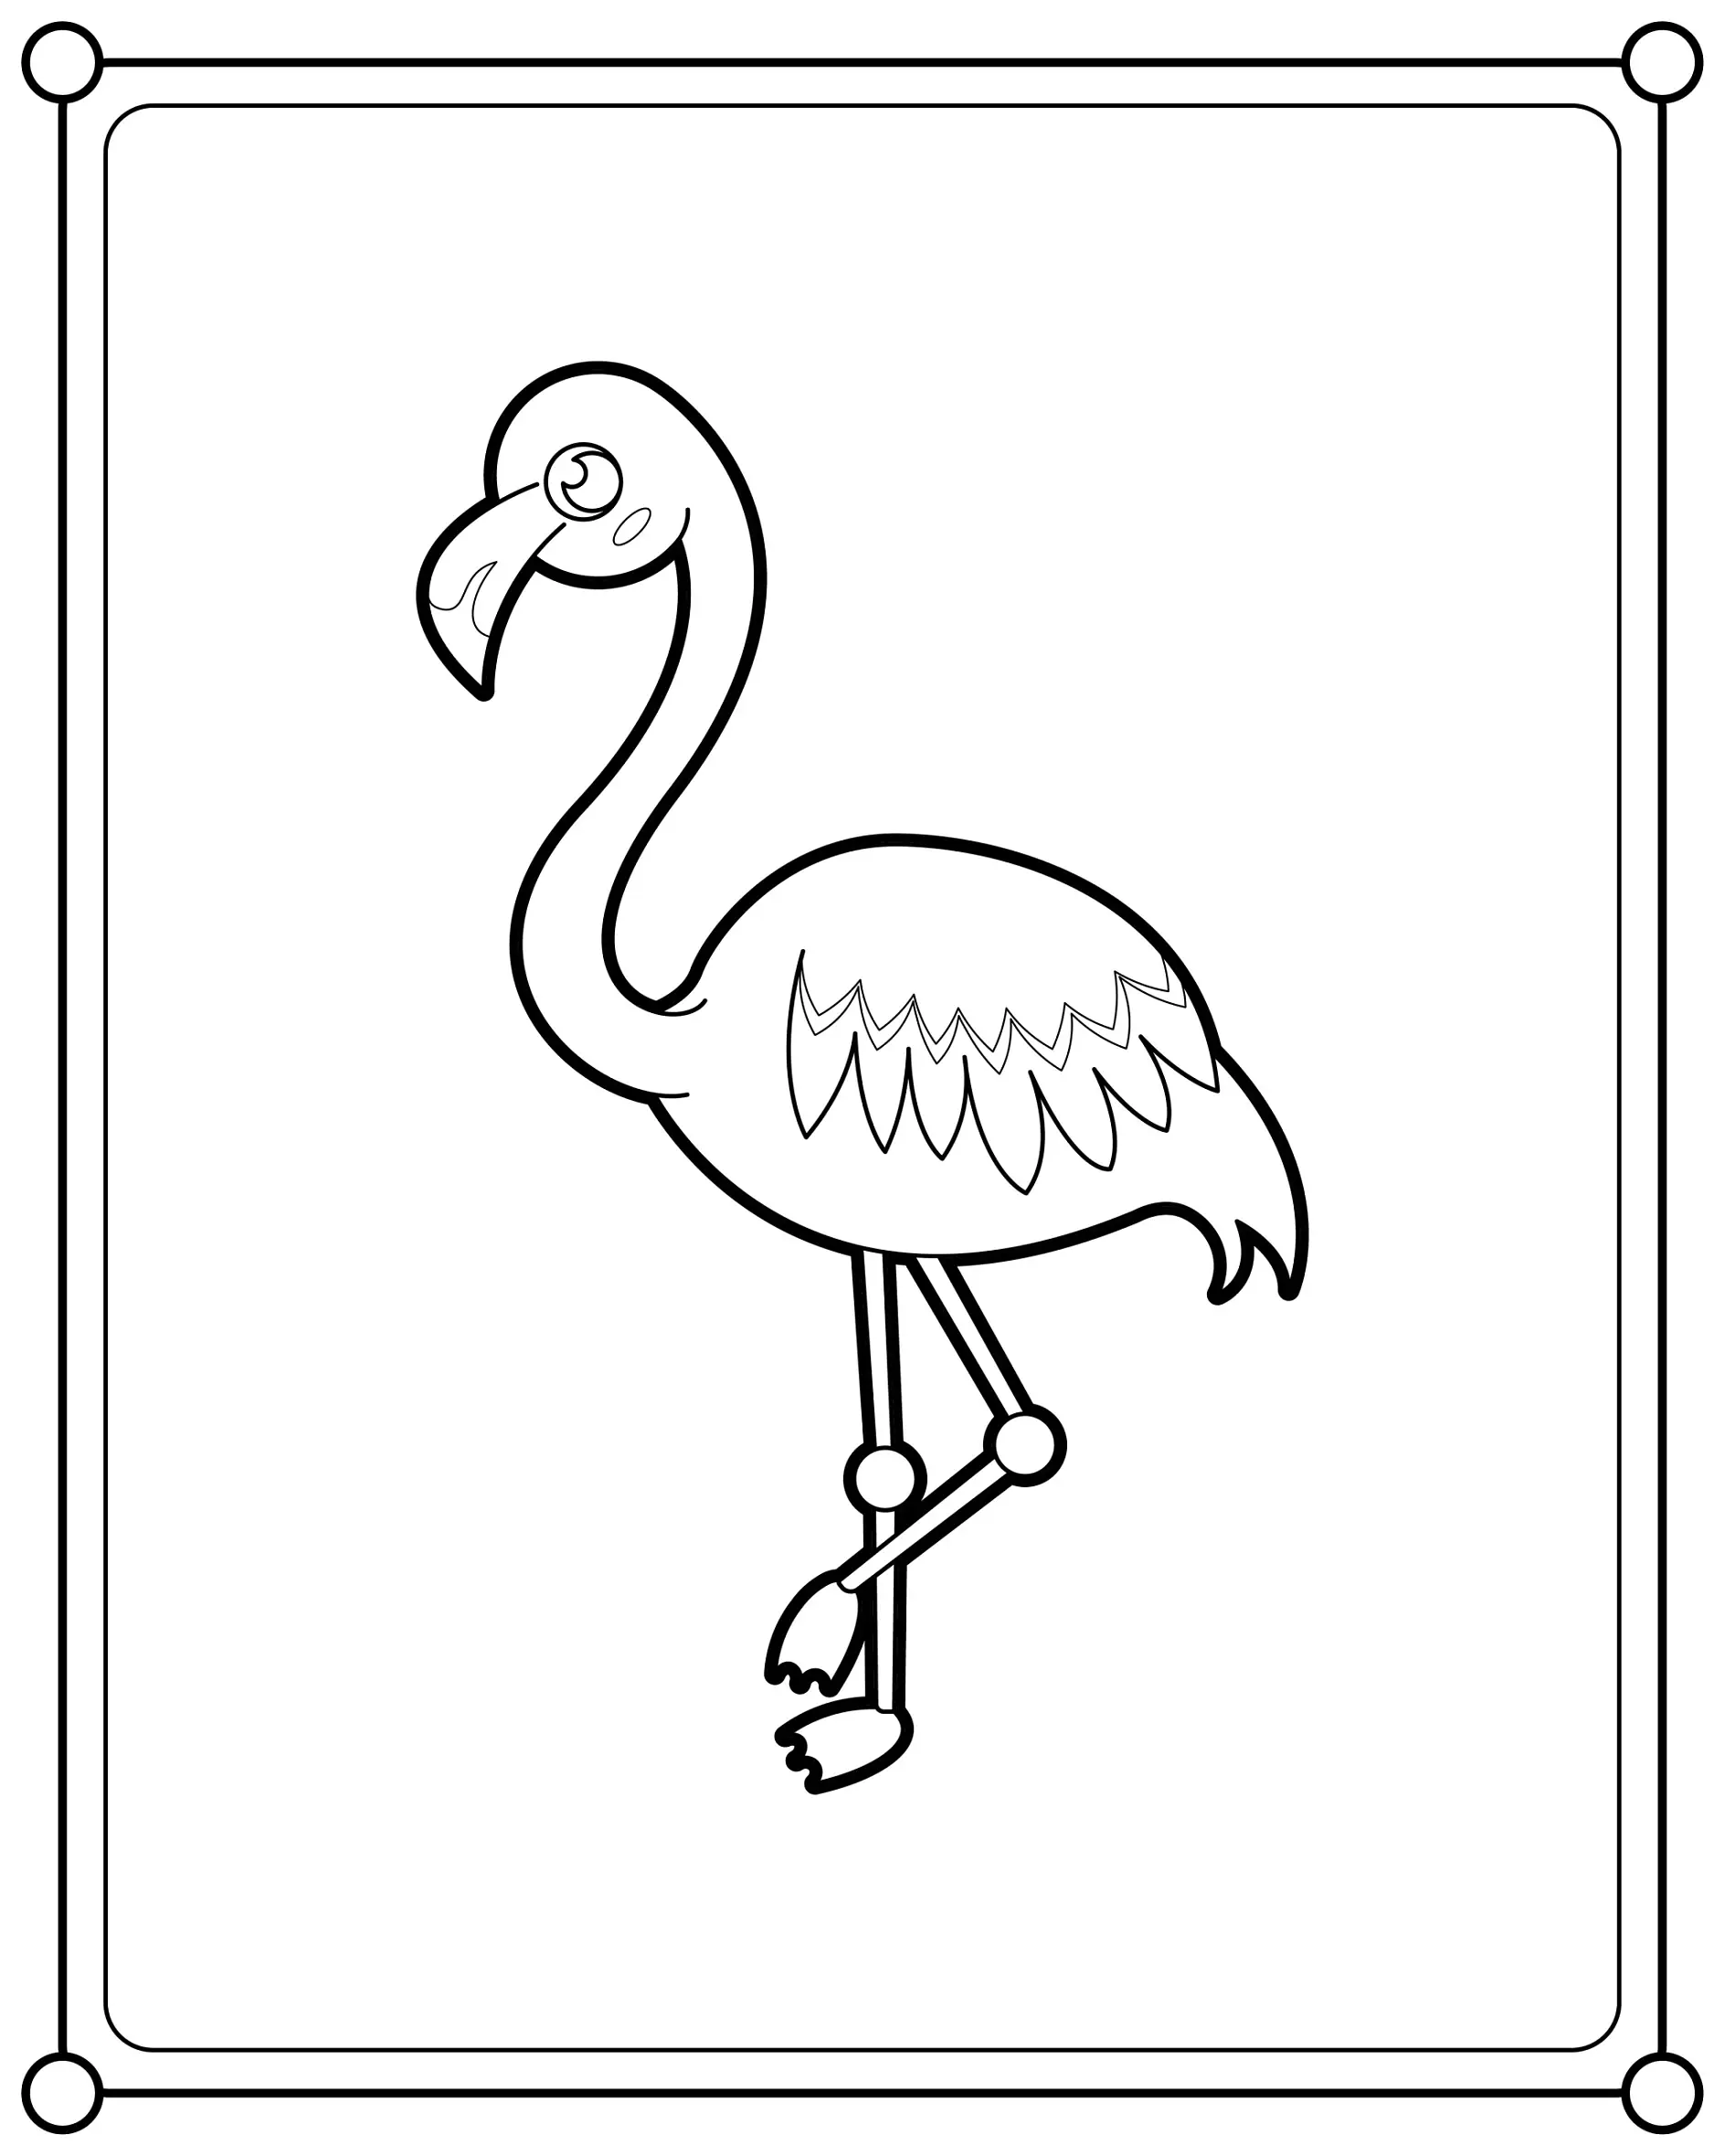 Ausmalbild Flamingo steht auf einem Bein im Rahmen